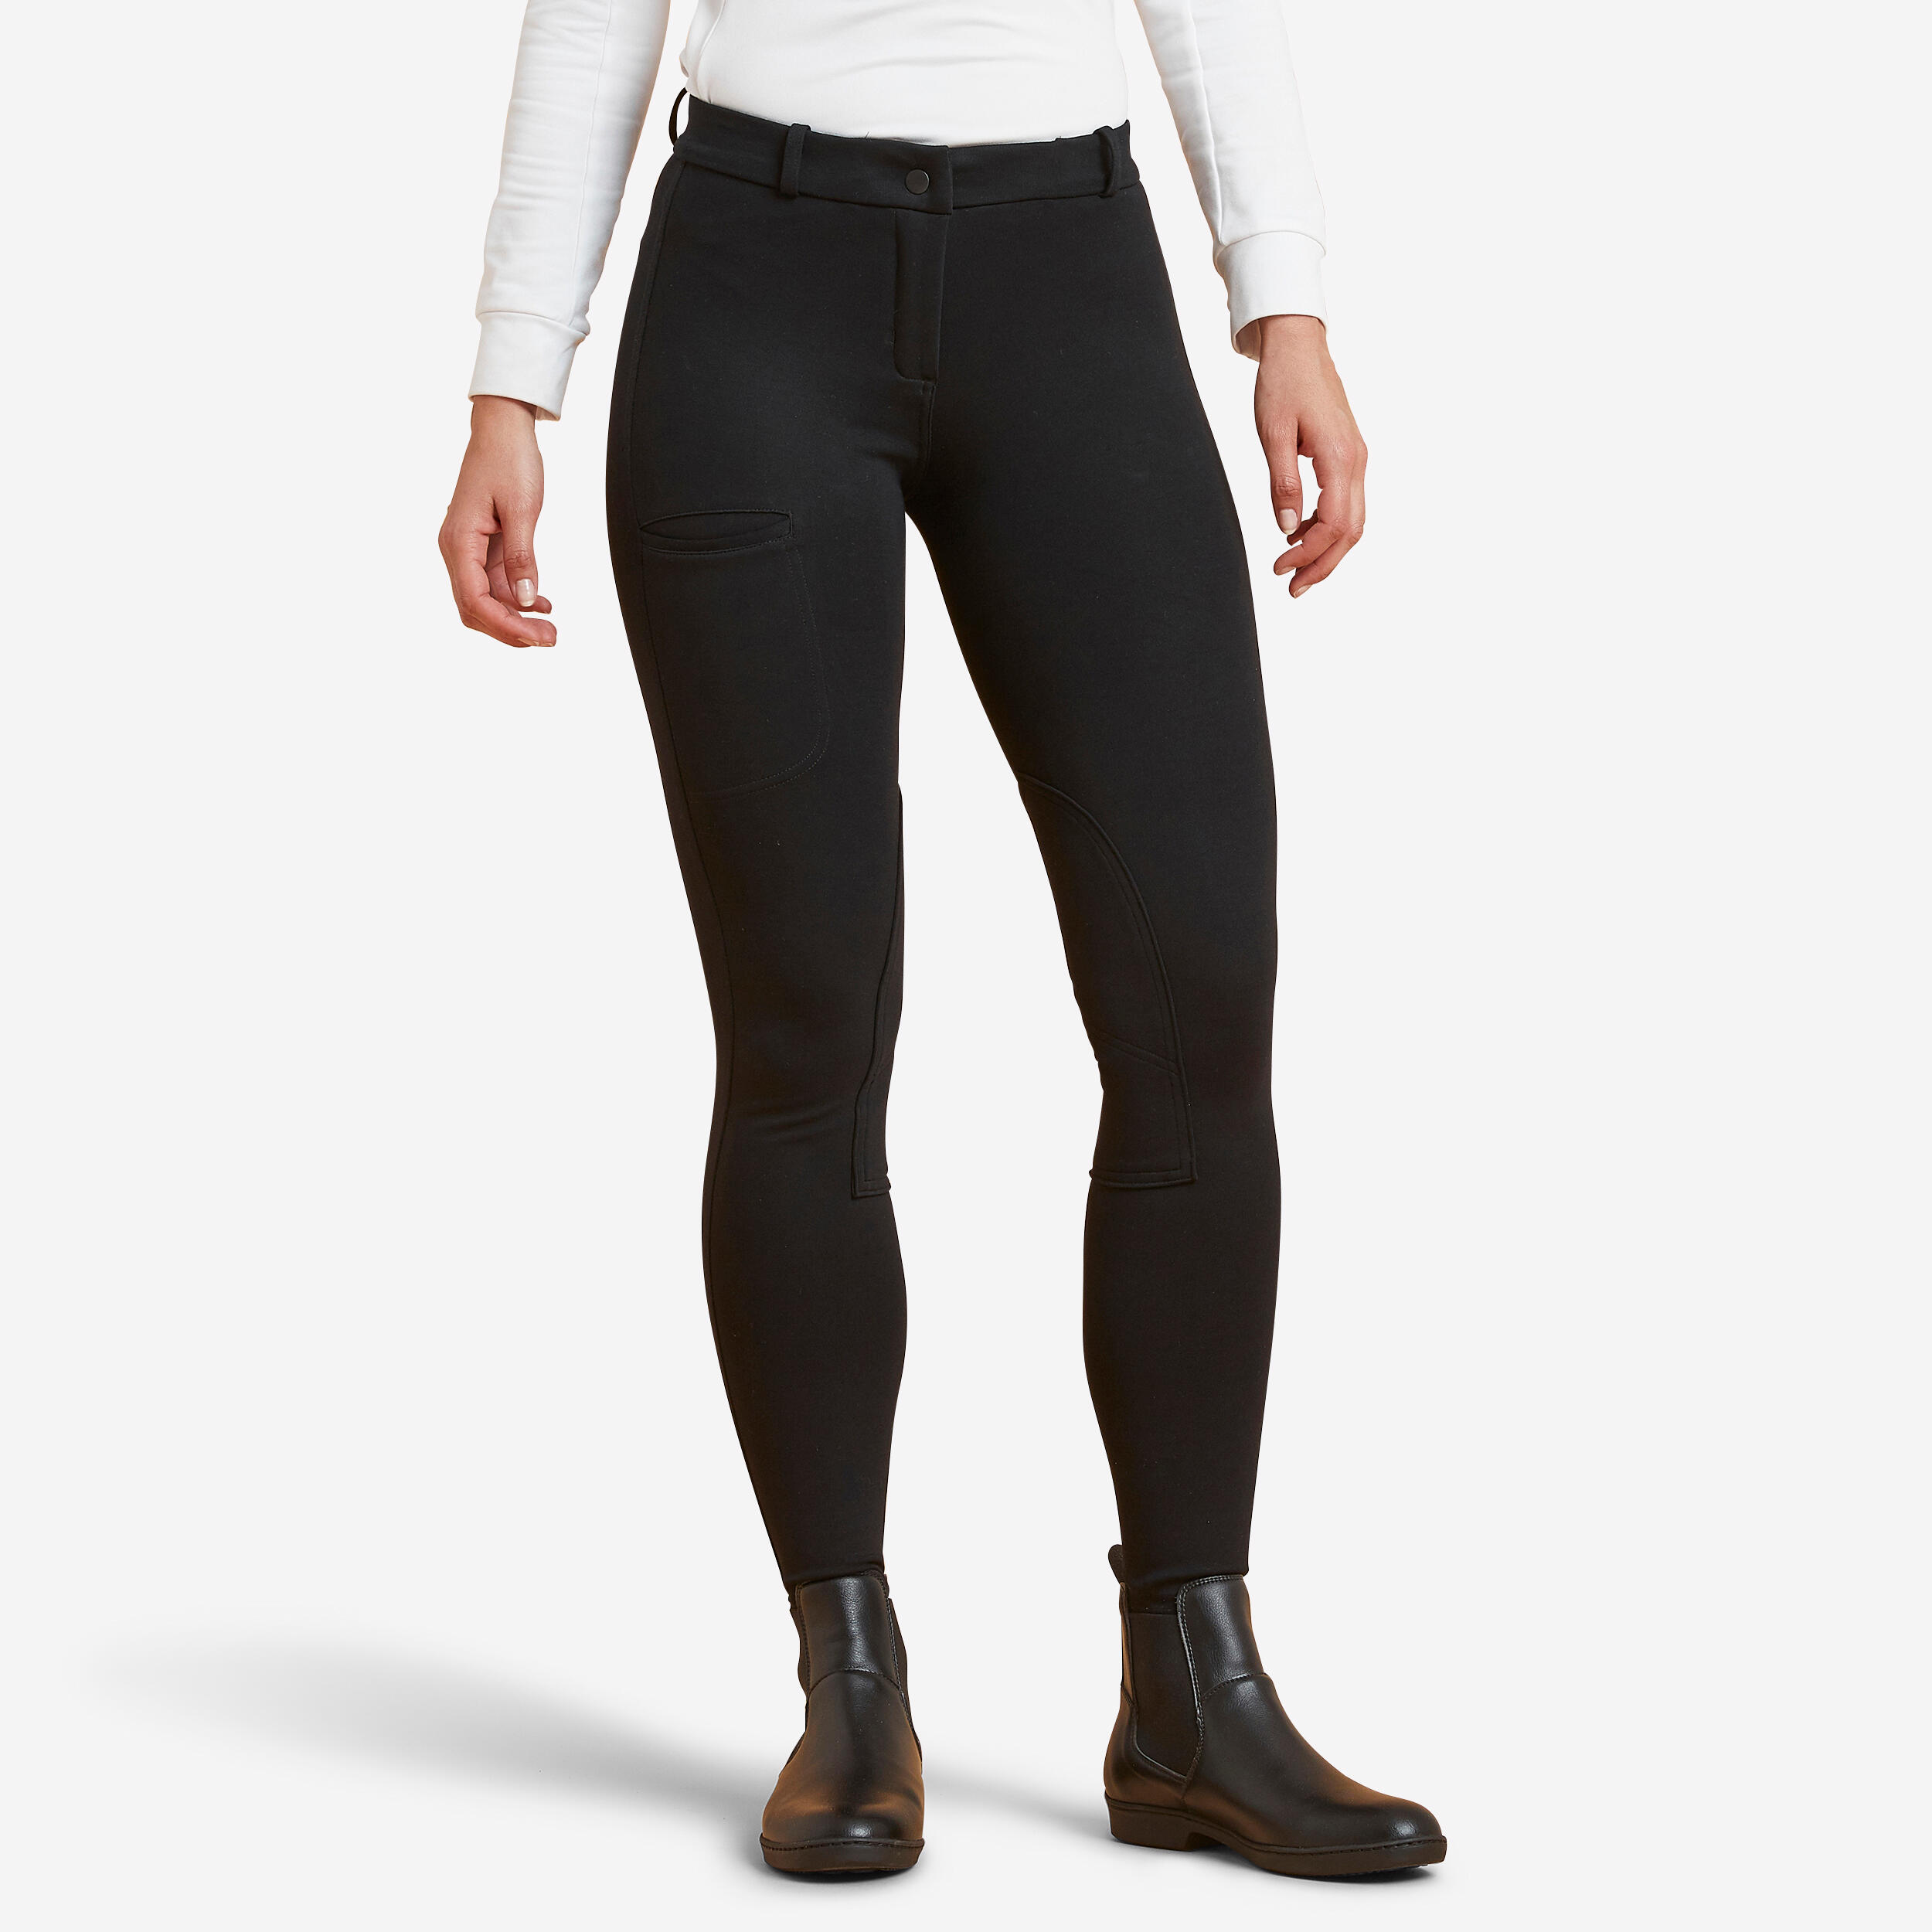 pantalon équitation femme - 100 noir - fouganza